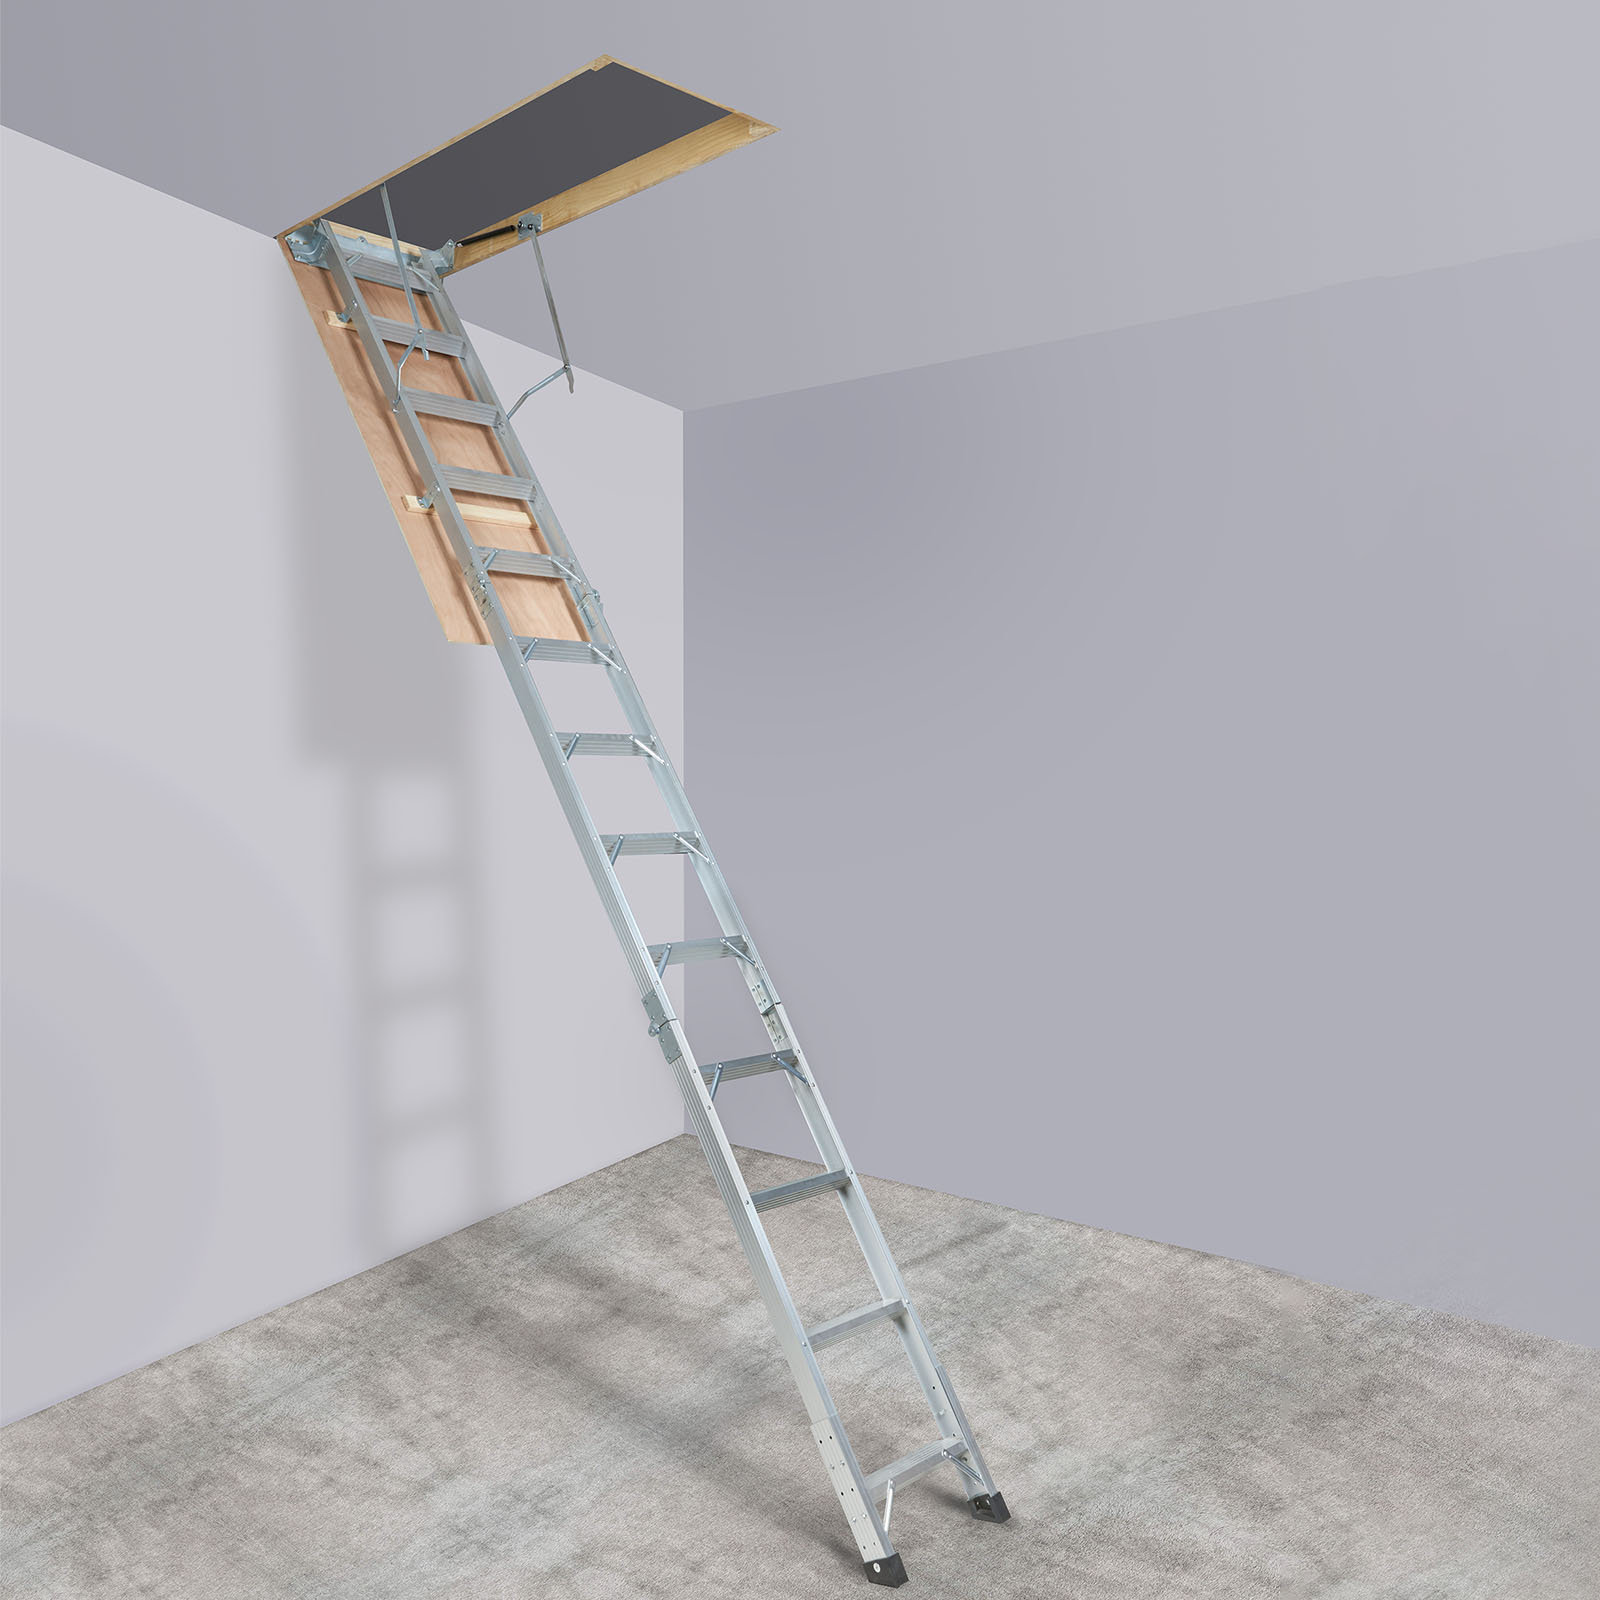 https://assets.wfcdn.com/im/02951212/compr-r85/2627/262721994/12-step-aluminum-attic-ladder.jpg